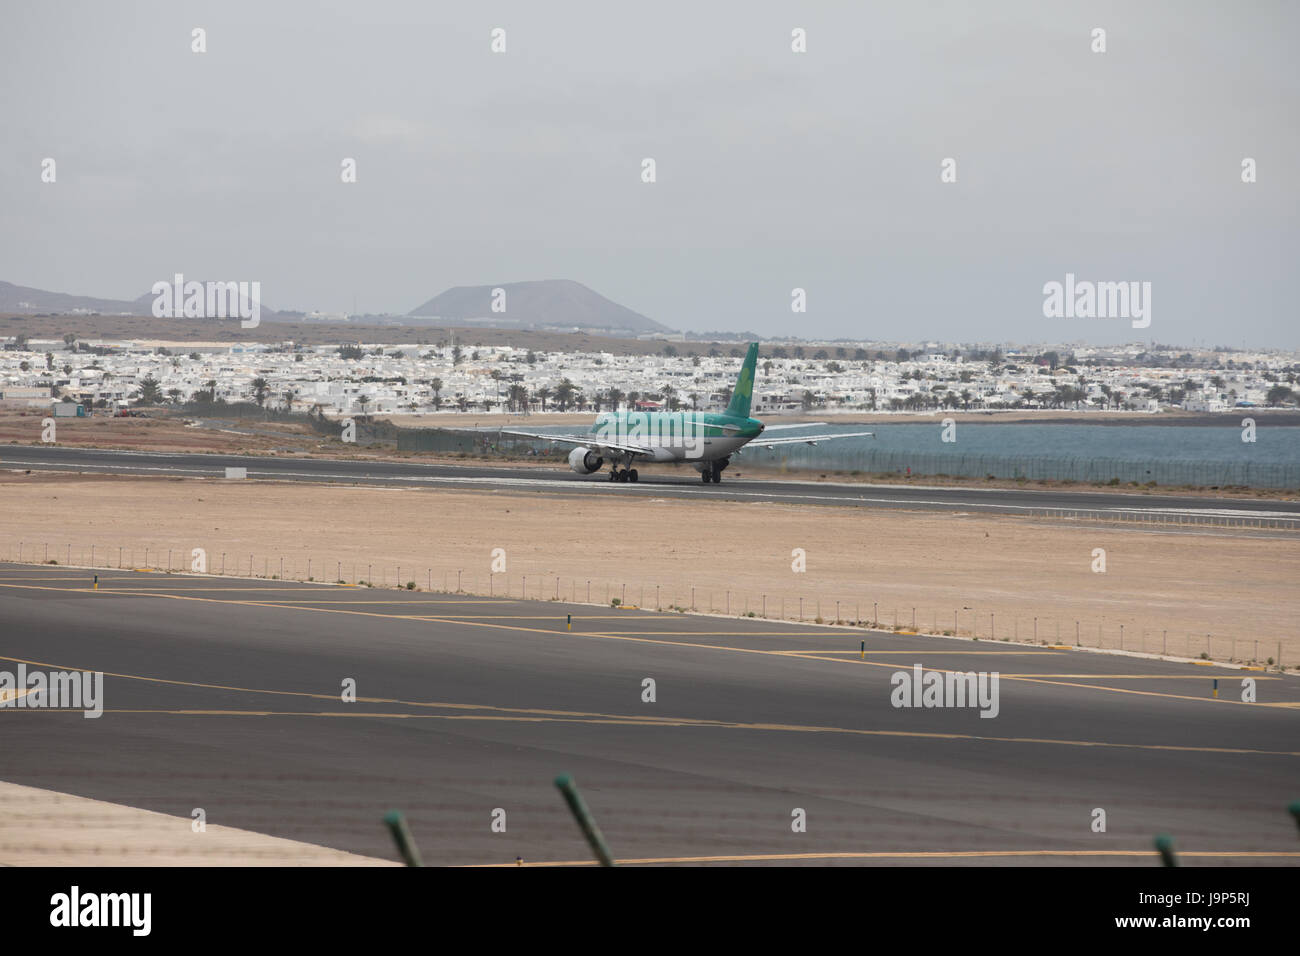 ARECIFE, Spagna - Aprile 15 2017: Airbus A320 di Aer Lingus pronto al decollo a Lanzarote Airport Foto Stock